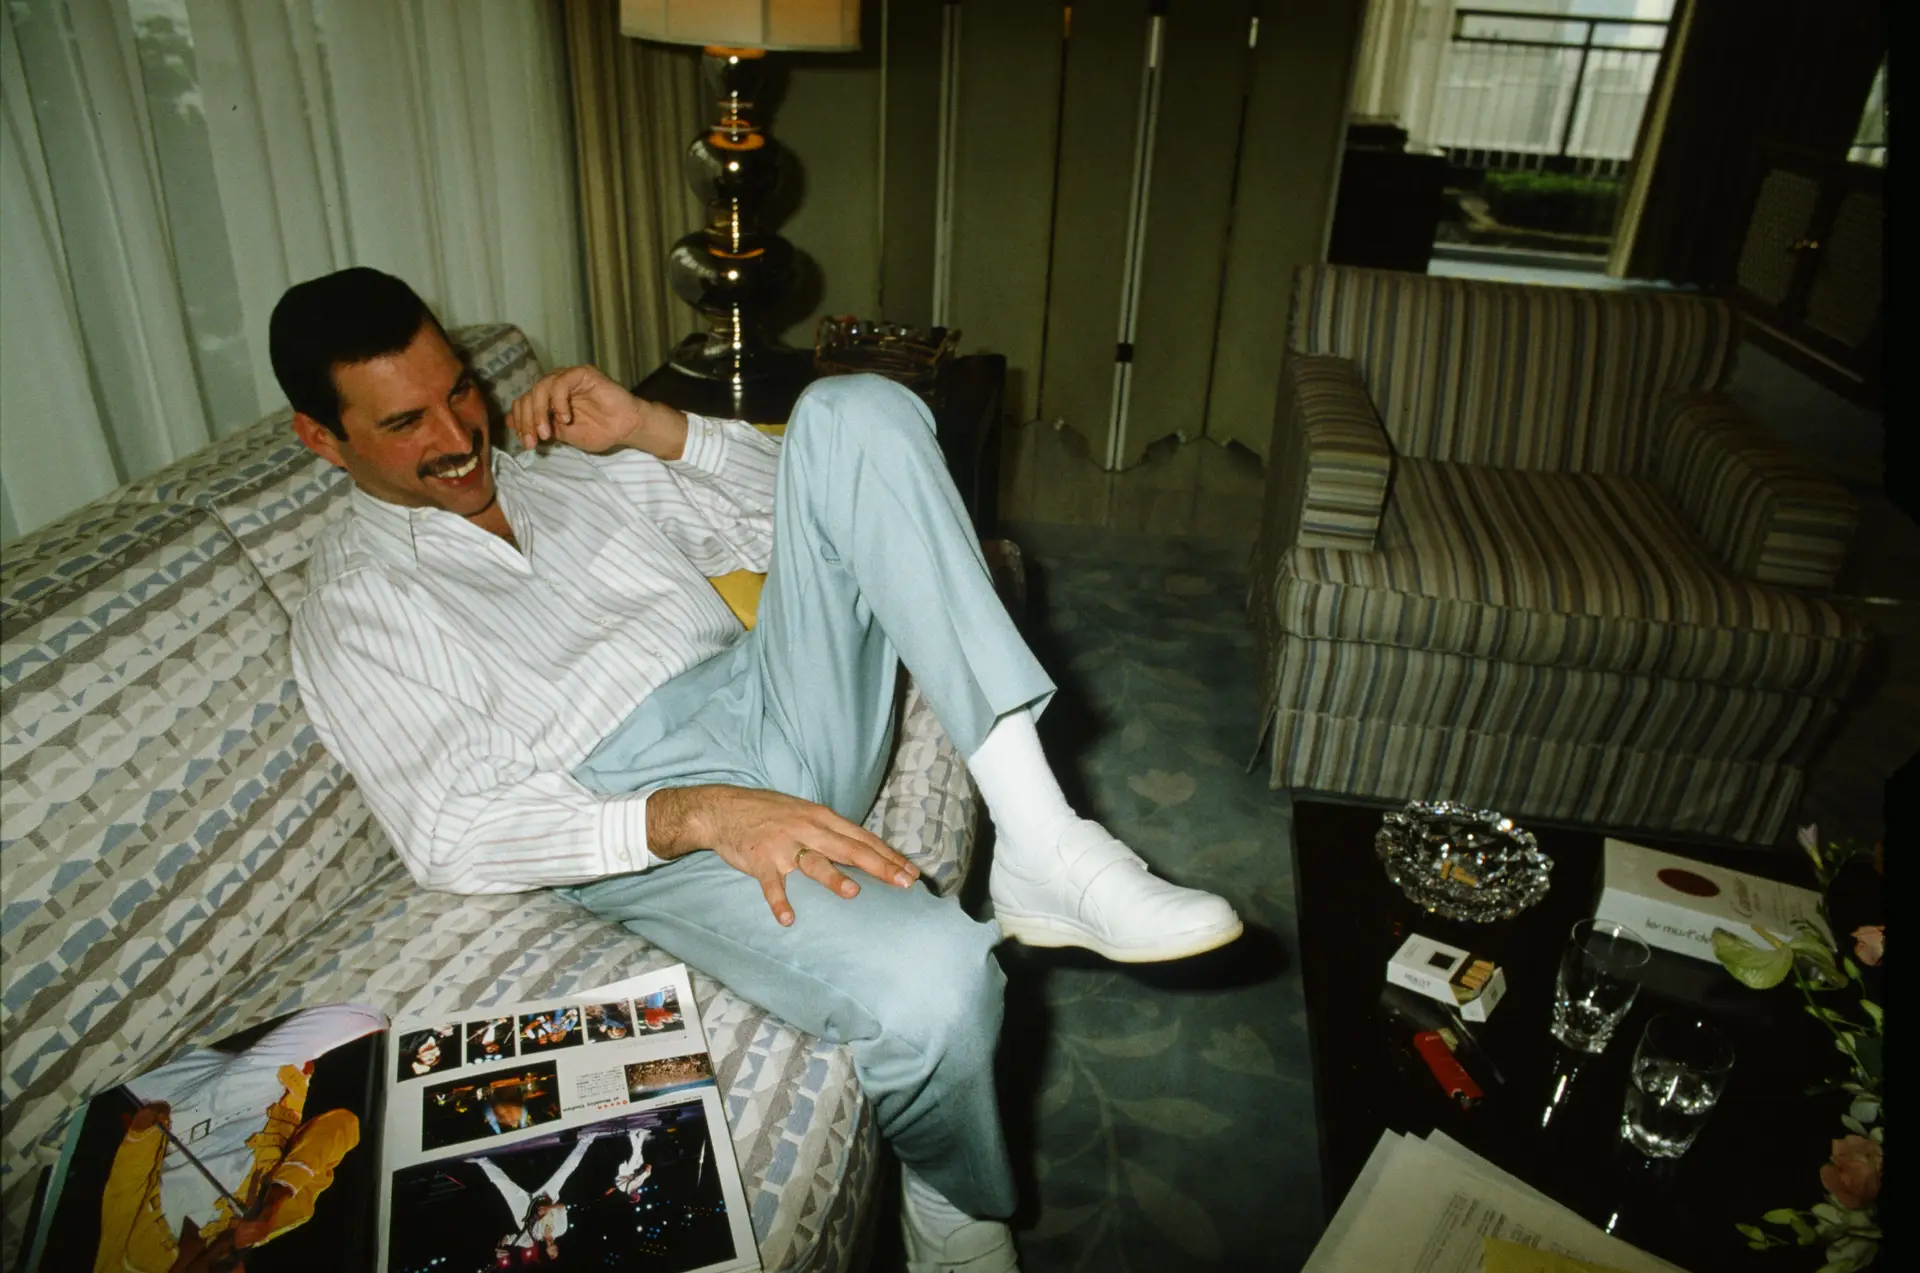 Documentário sobre o “último ato” de Freddie Mercury vai passar na televisão em Portugal